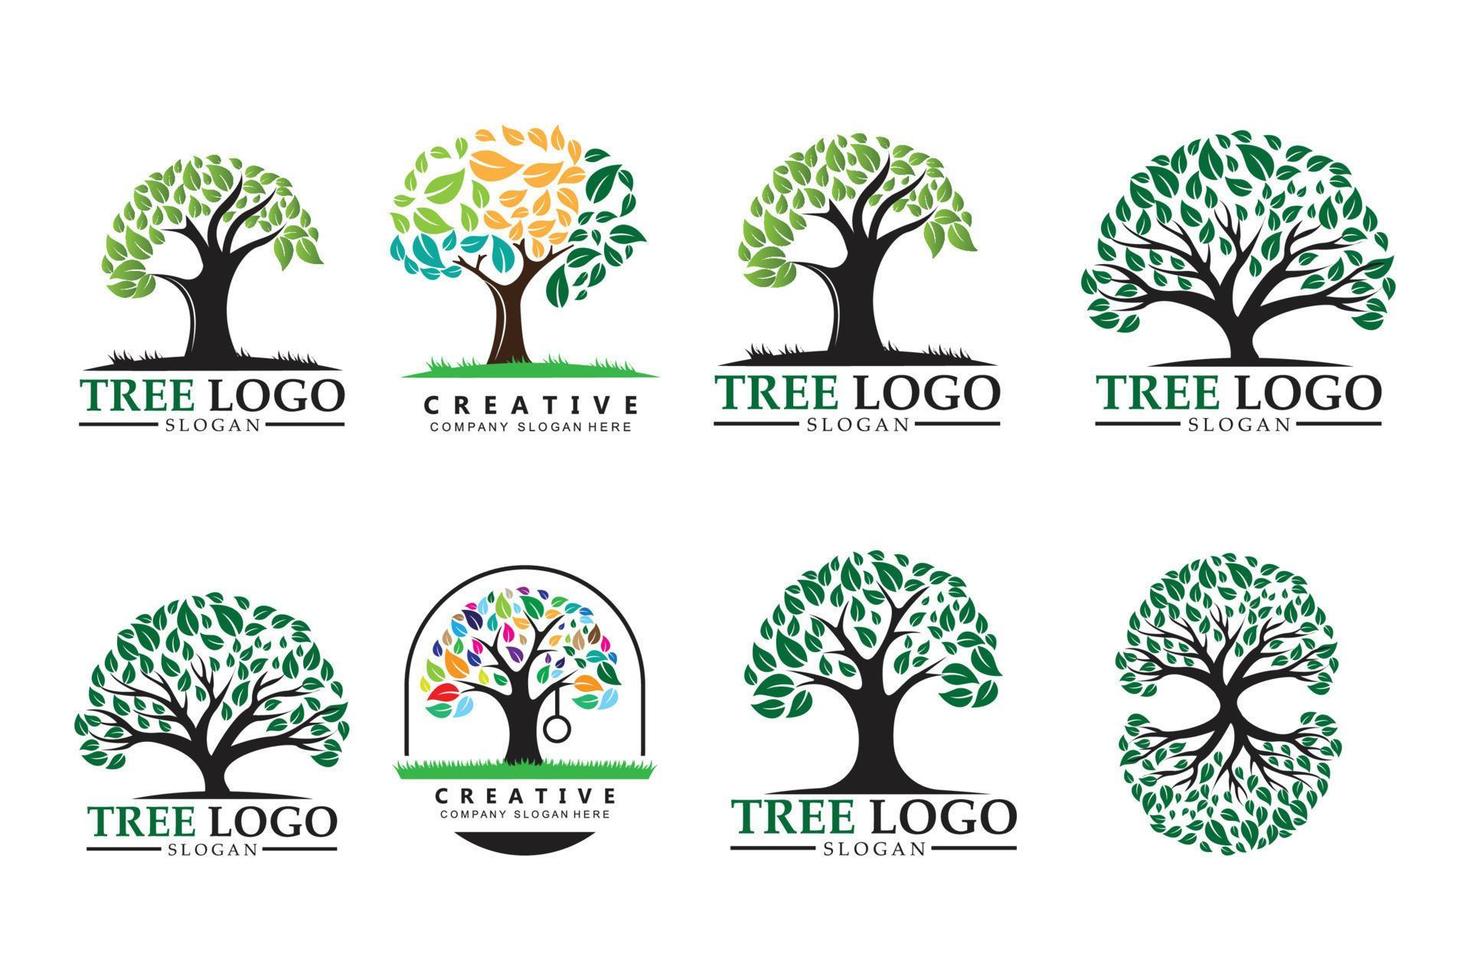 diseño del logotipo del árbol, ilustración de la planta de aprendizaje infantil vector